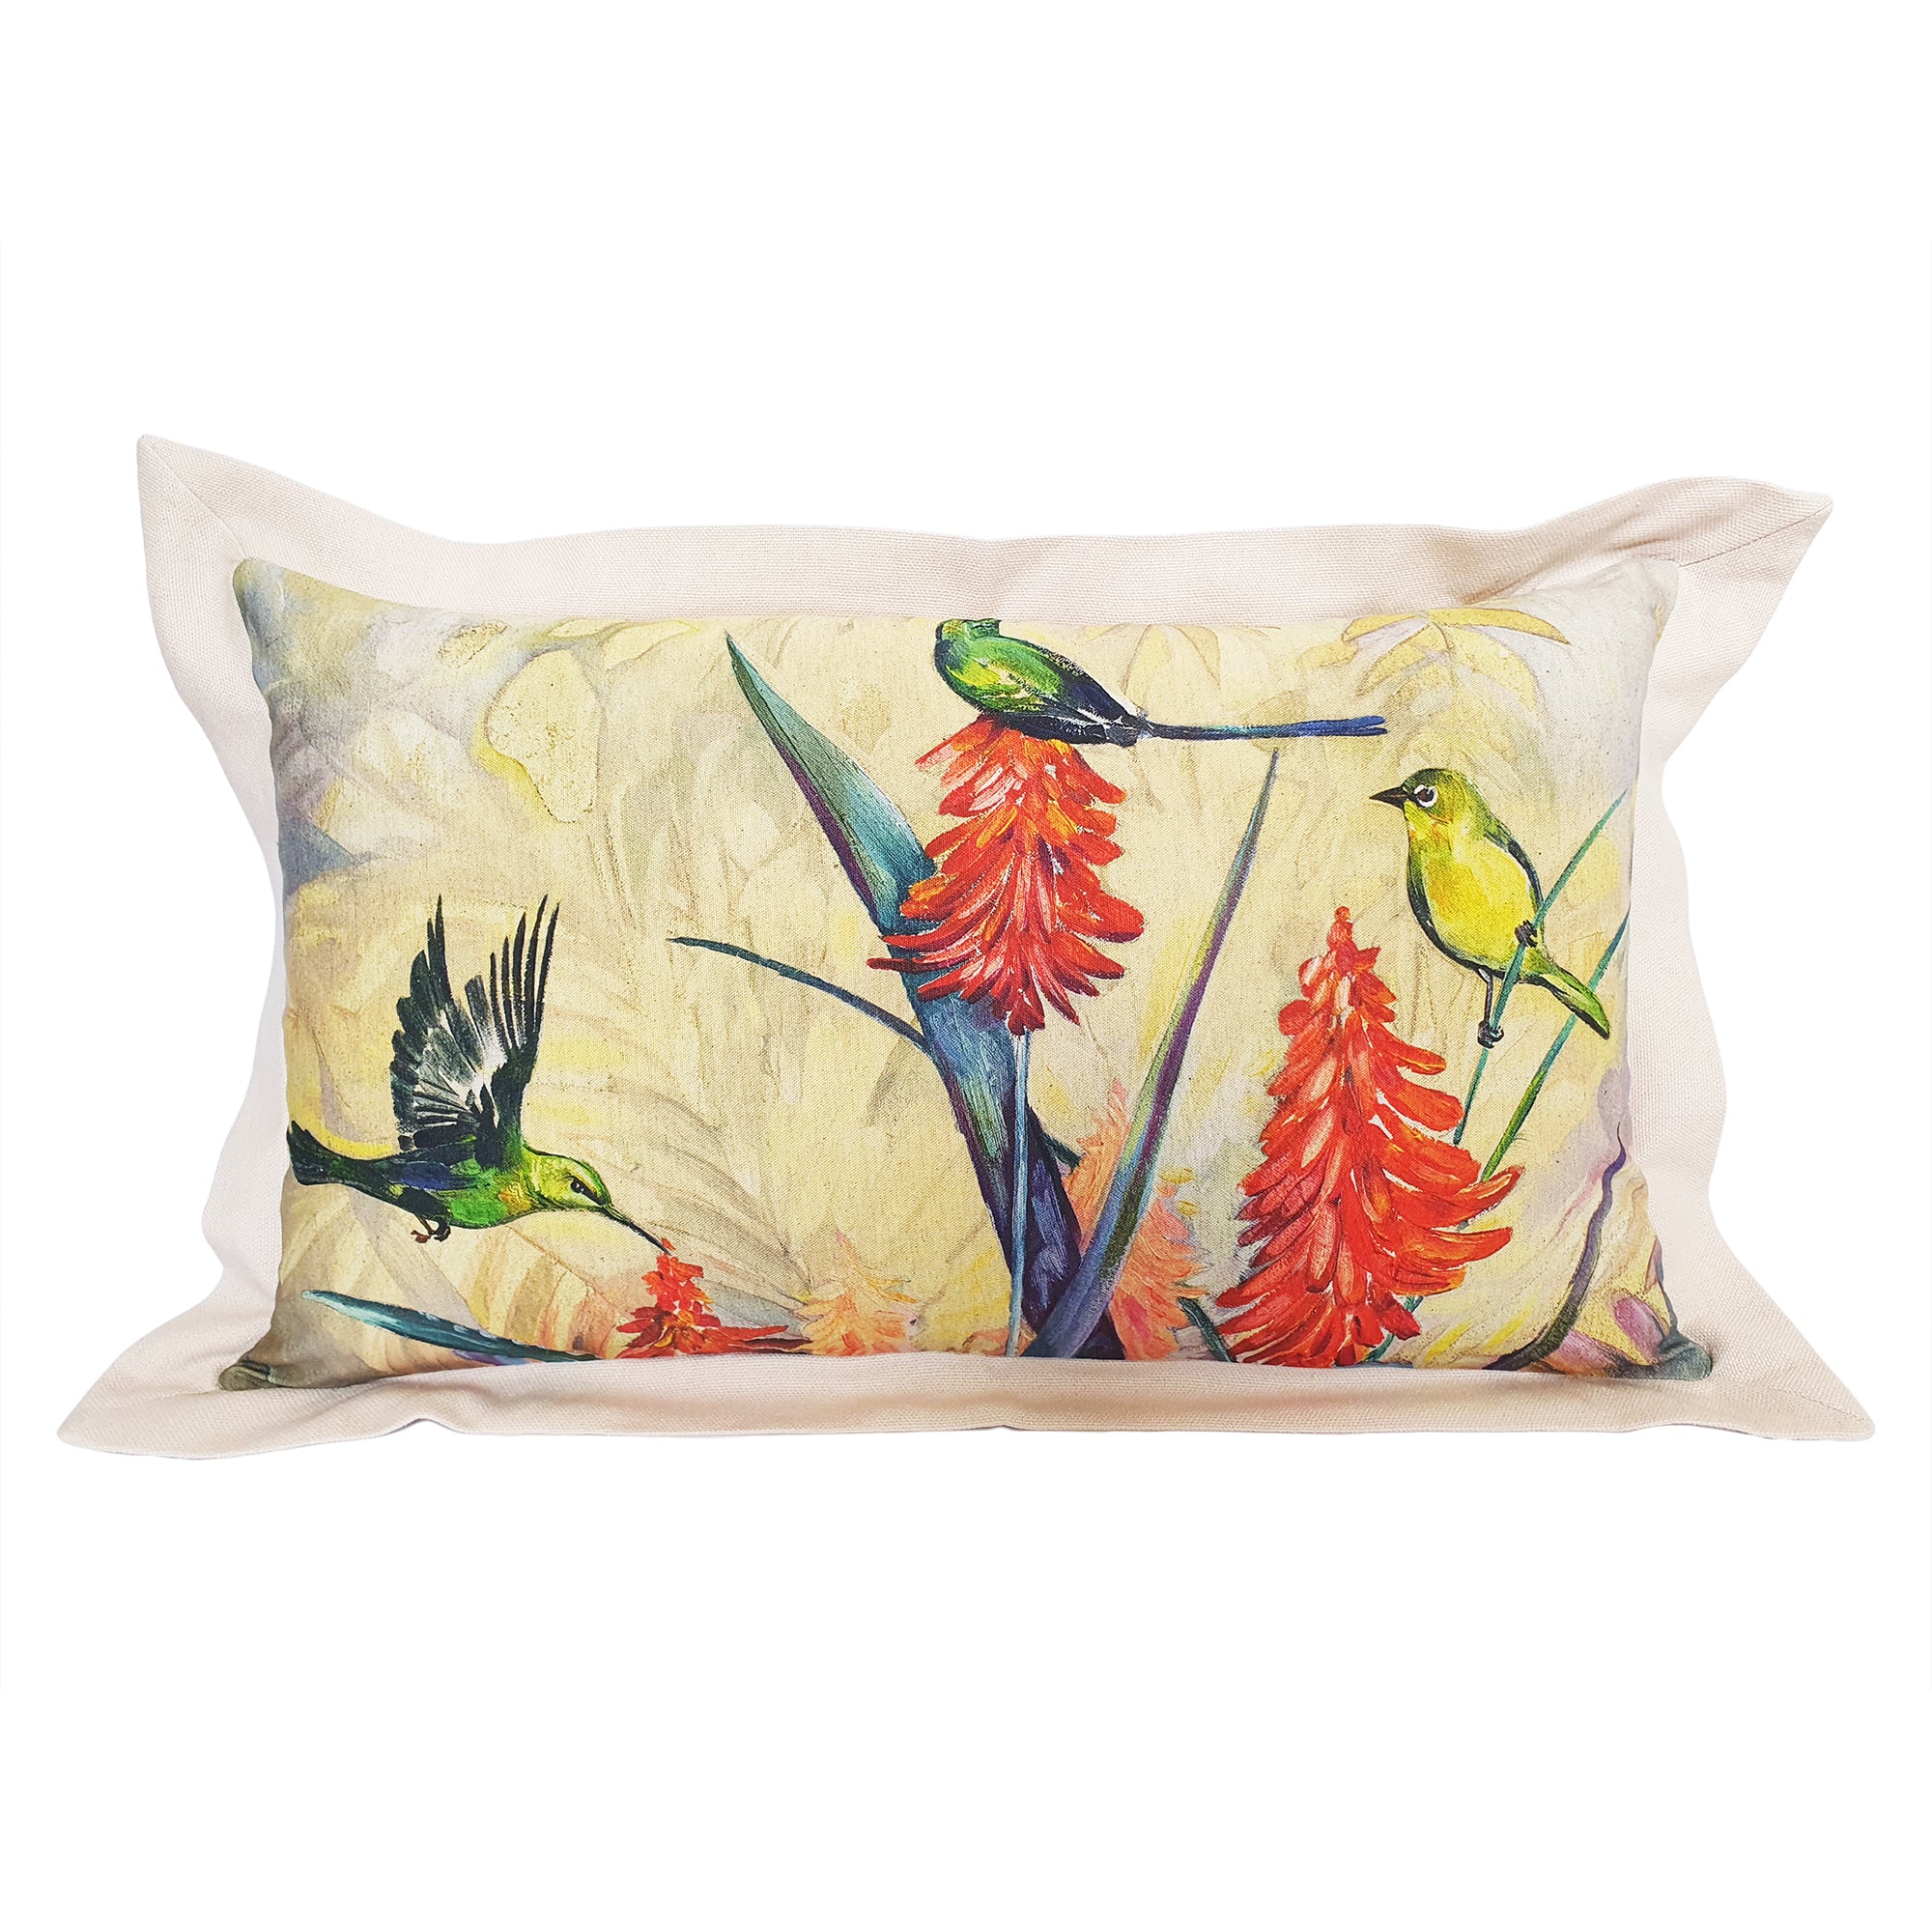 Aloe Cushion Cover, 30cm x 60cm, Cotton-linen blend